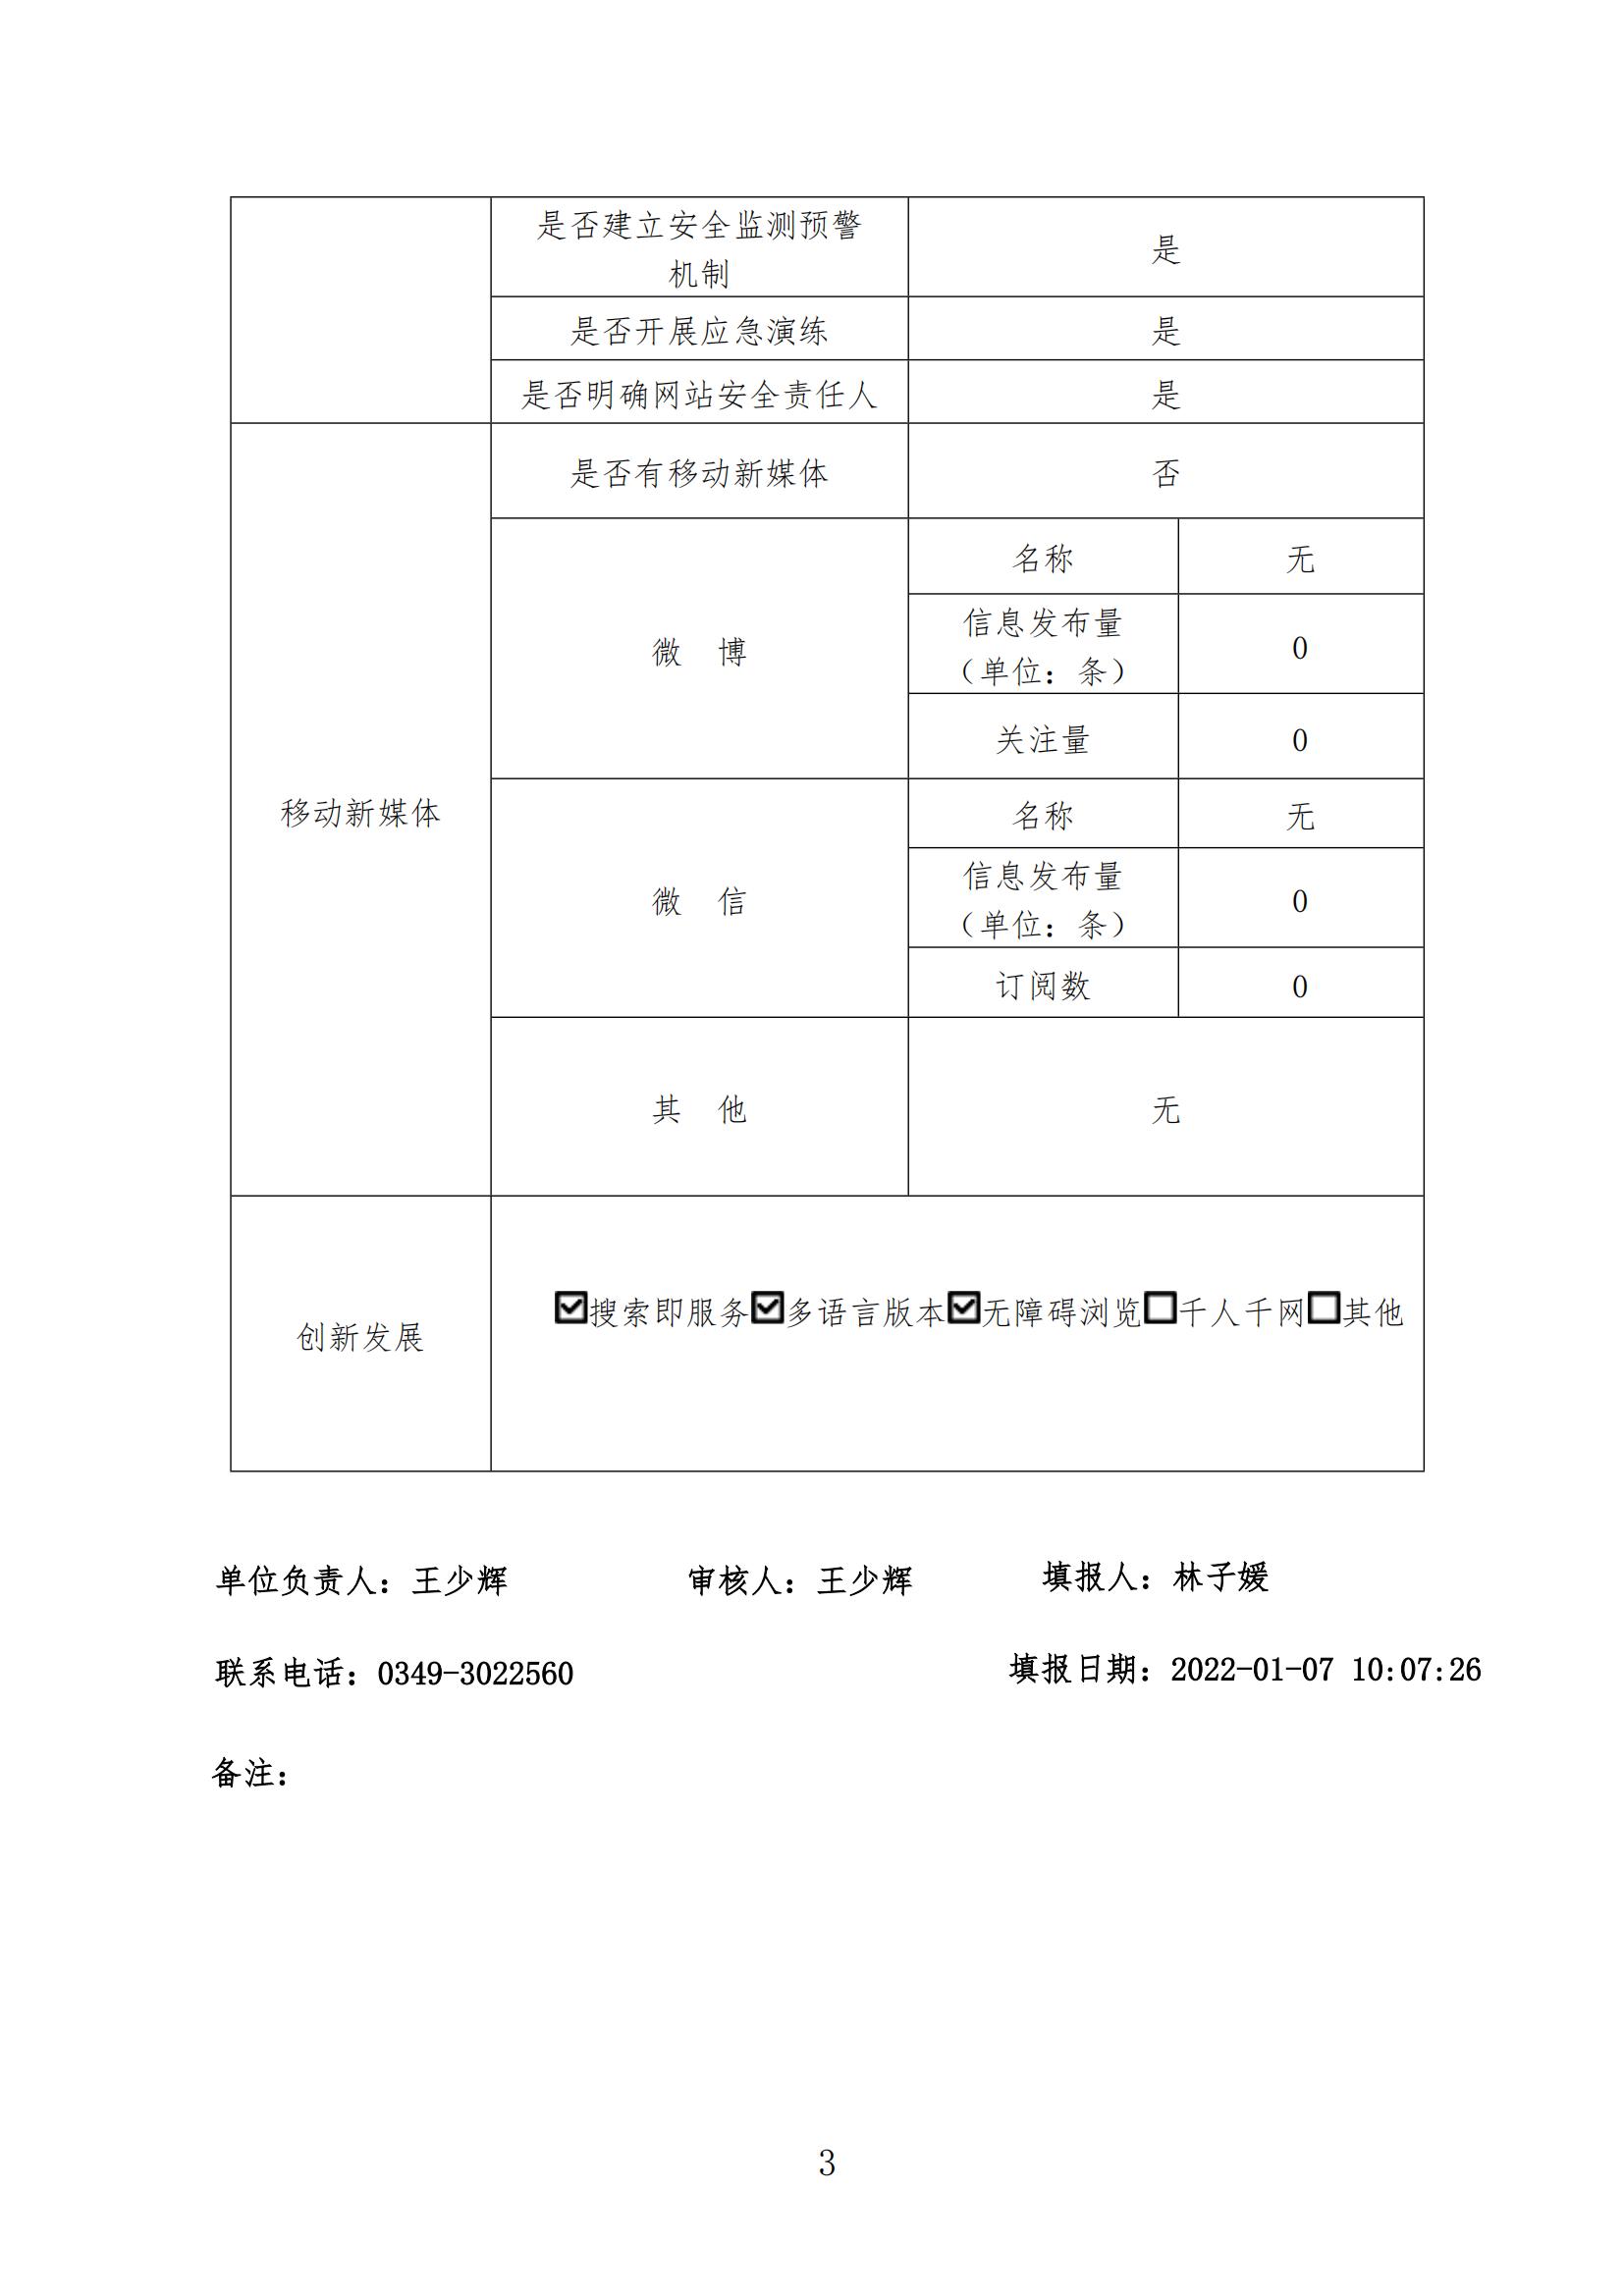 怀仁市政府门户网站年度工作报表 （2021年度）-3